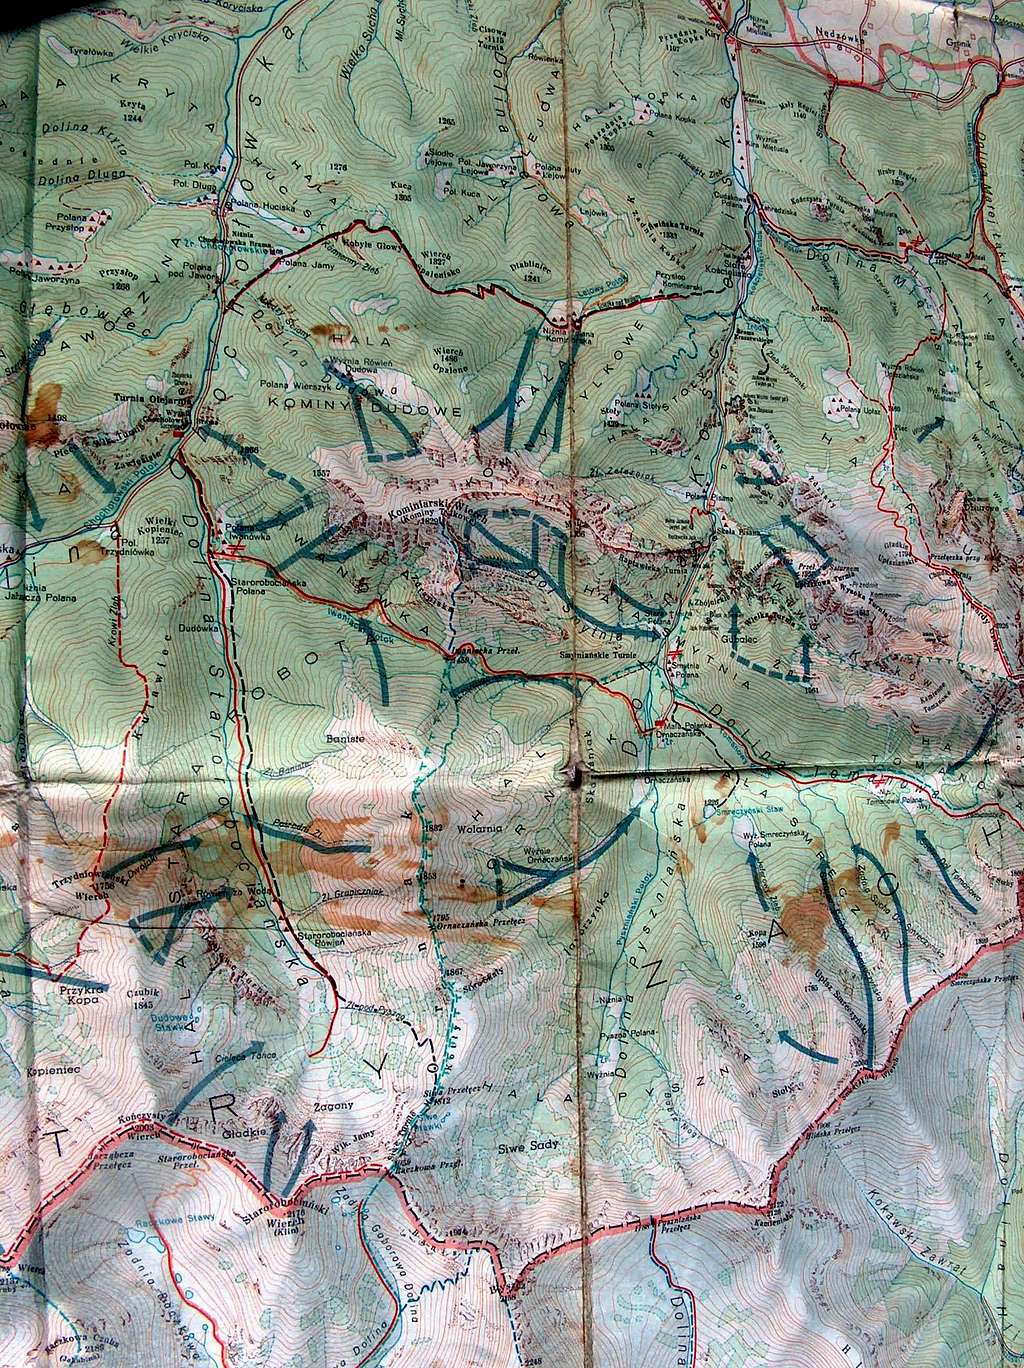 Kominiarski Wierch trail on a 1970 map